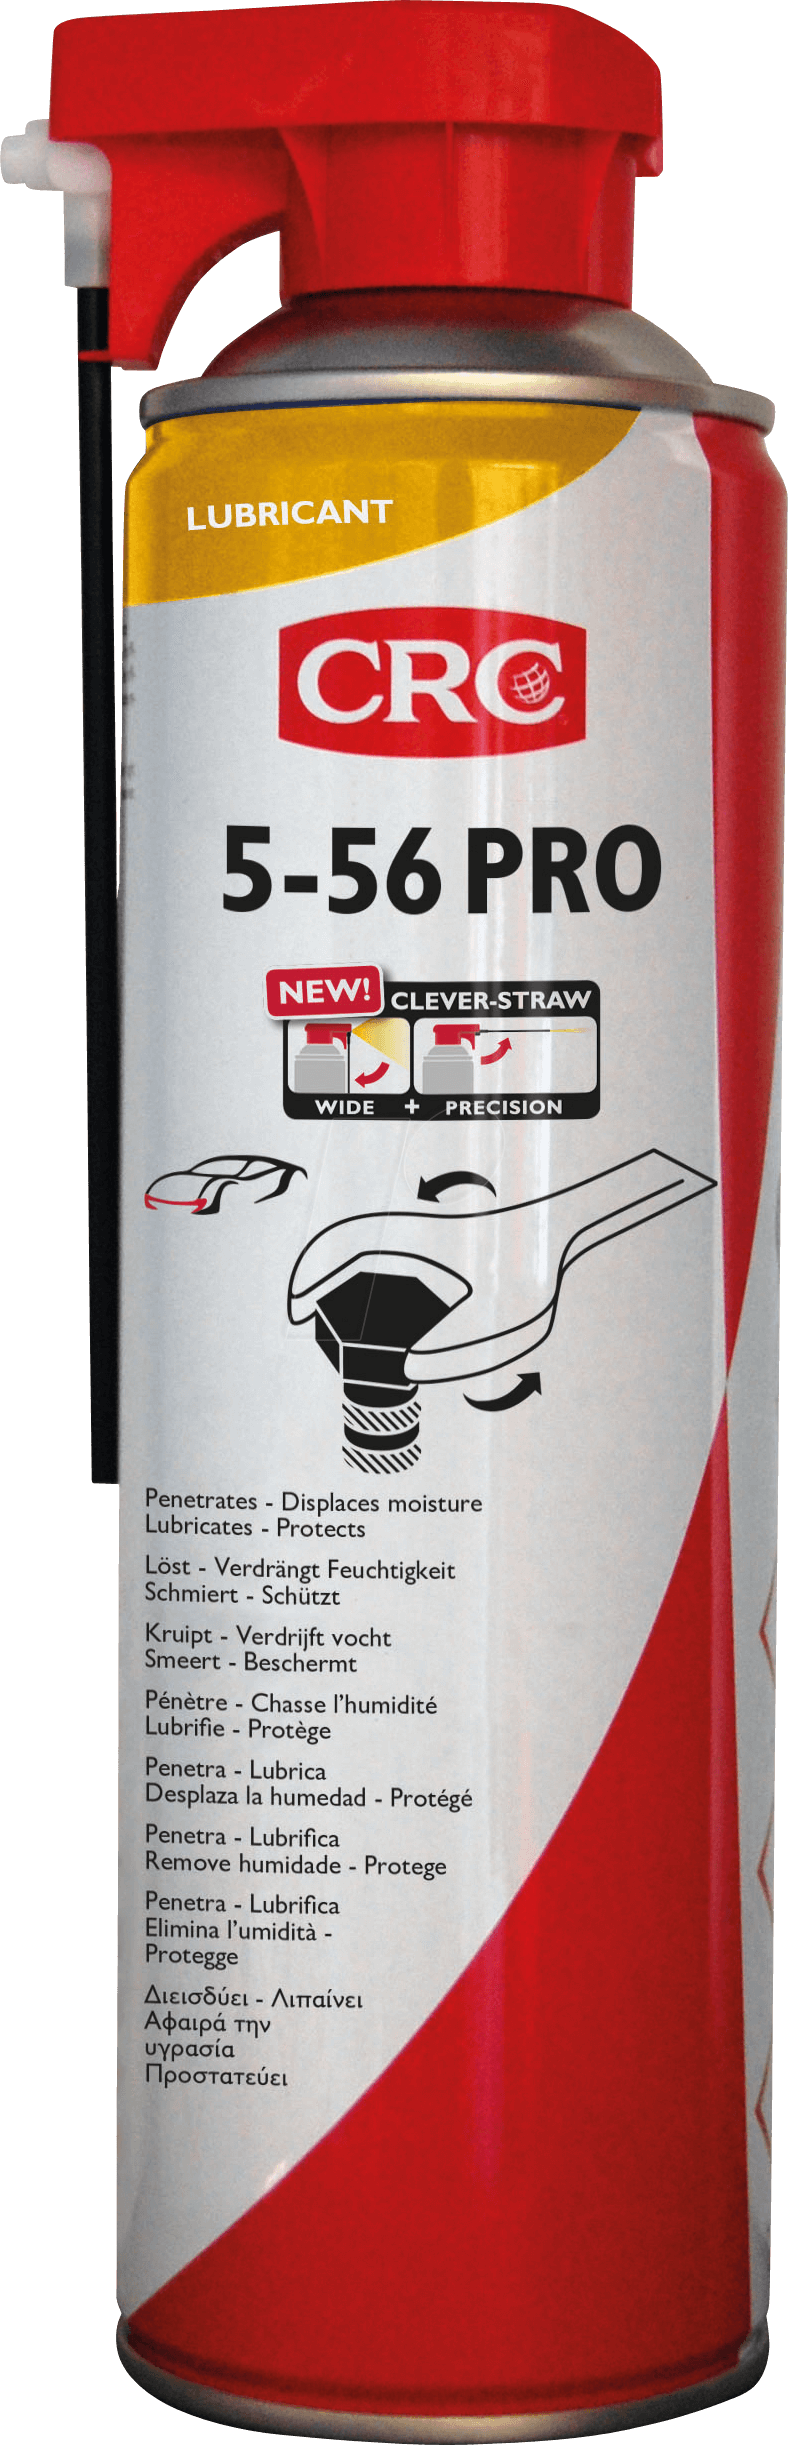 KONTAKT 33233 - Multifunktionsöl, 5-56 Pro Clever Straw, 500 ml von CRC-KONTAKTCHEMIE